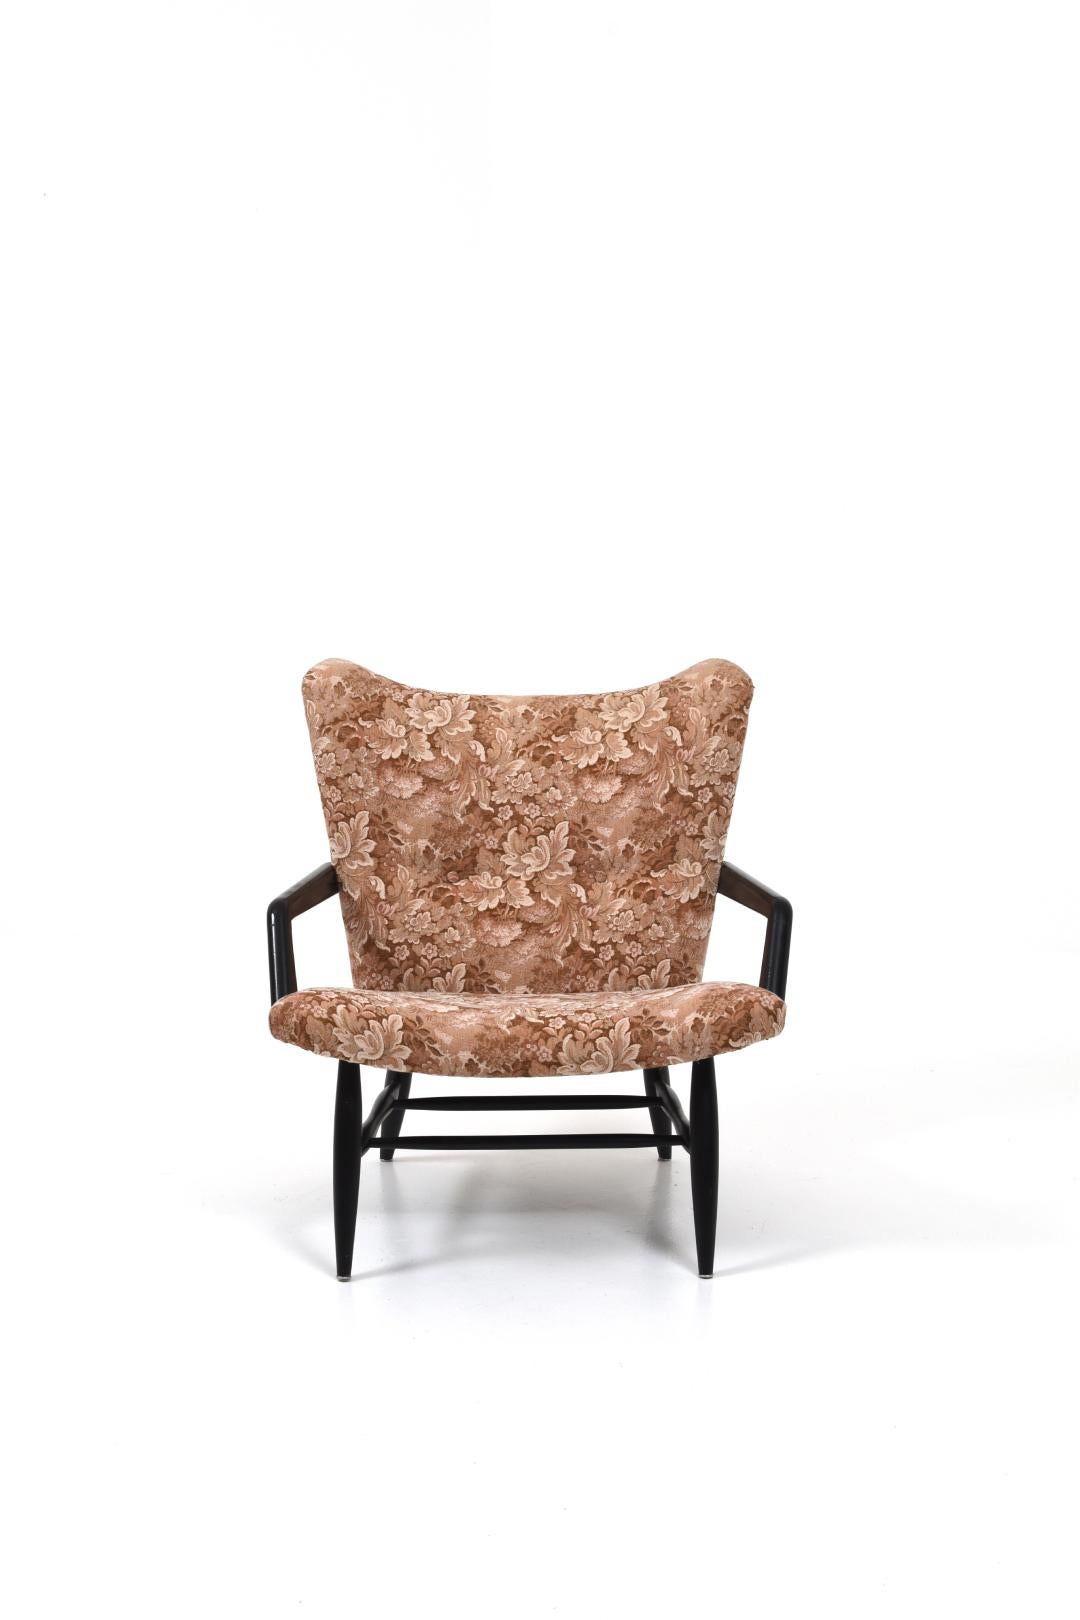 Un fauteuil inhabituel conçu par Svante Skogh.
Le fauteuil a un cadre peint en noir et un tissu d'origine. Le tissu est patiné, mais il est entièrement fonctionnel.